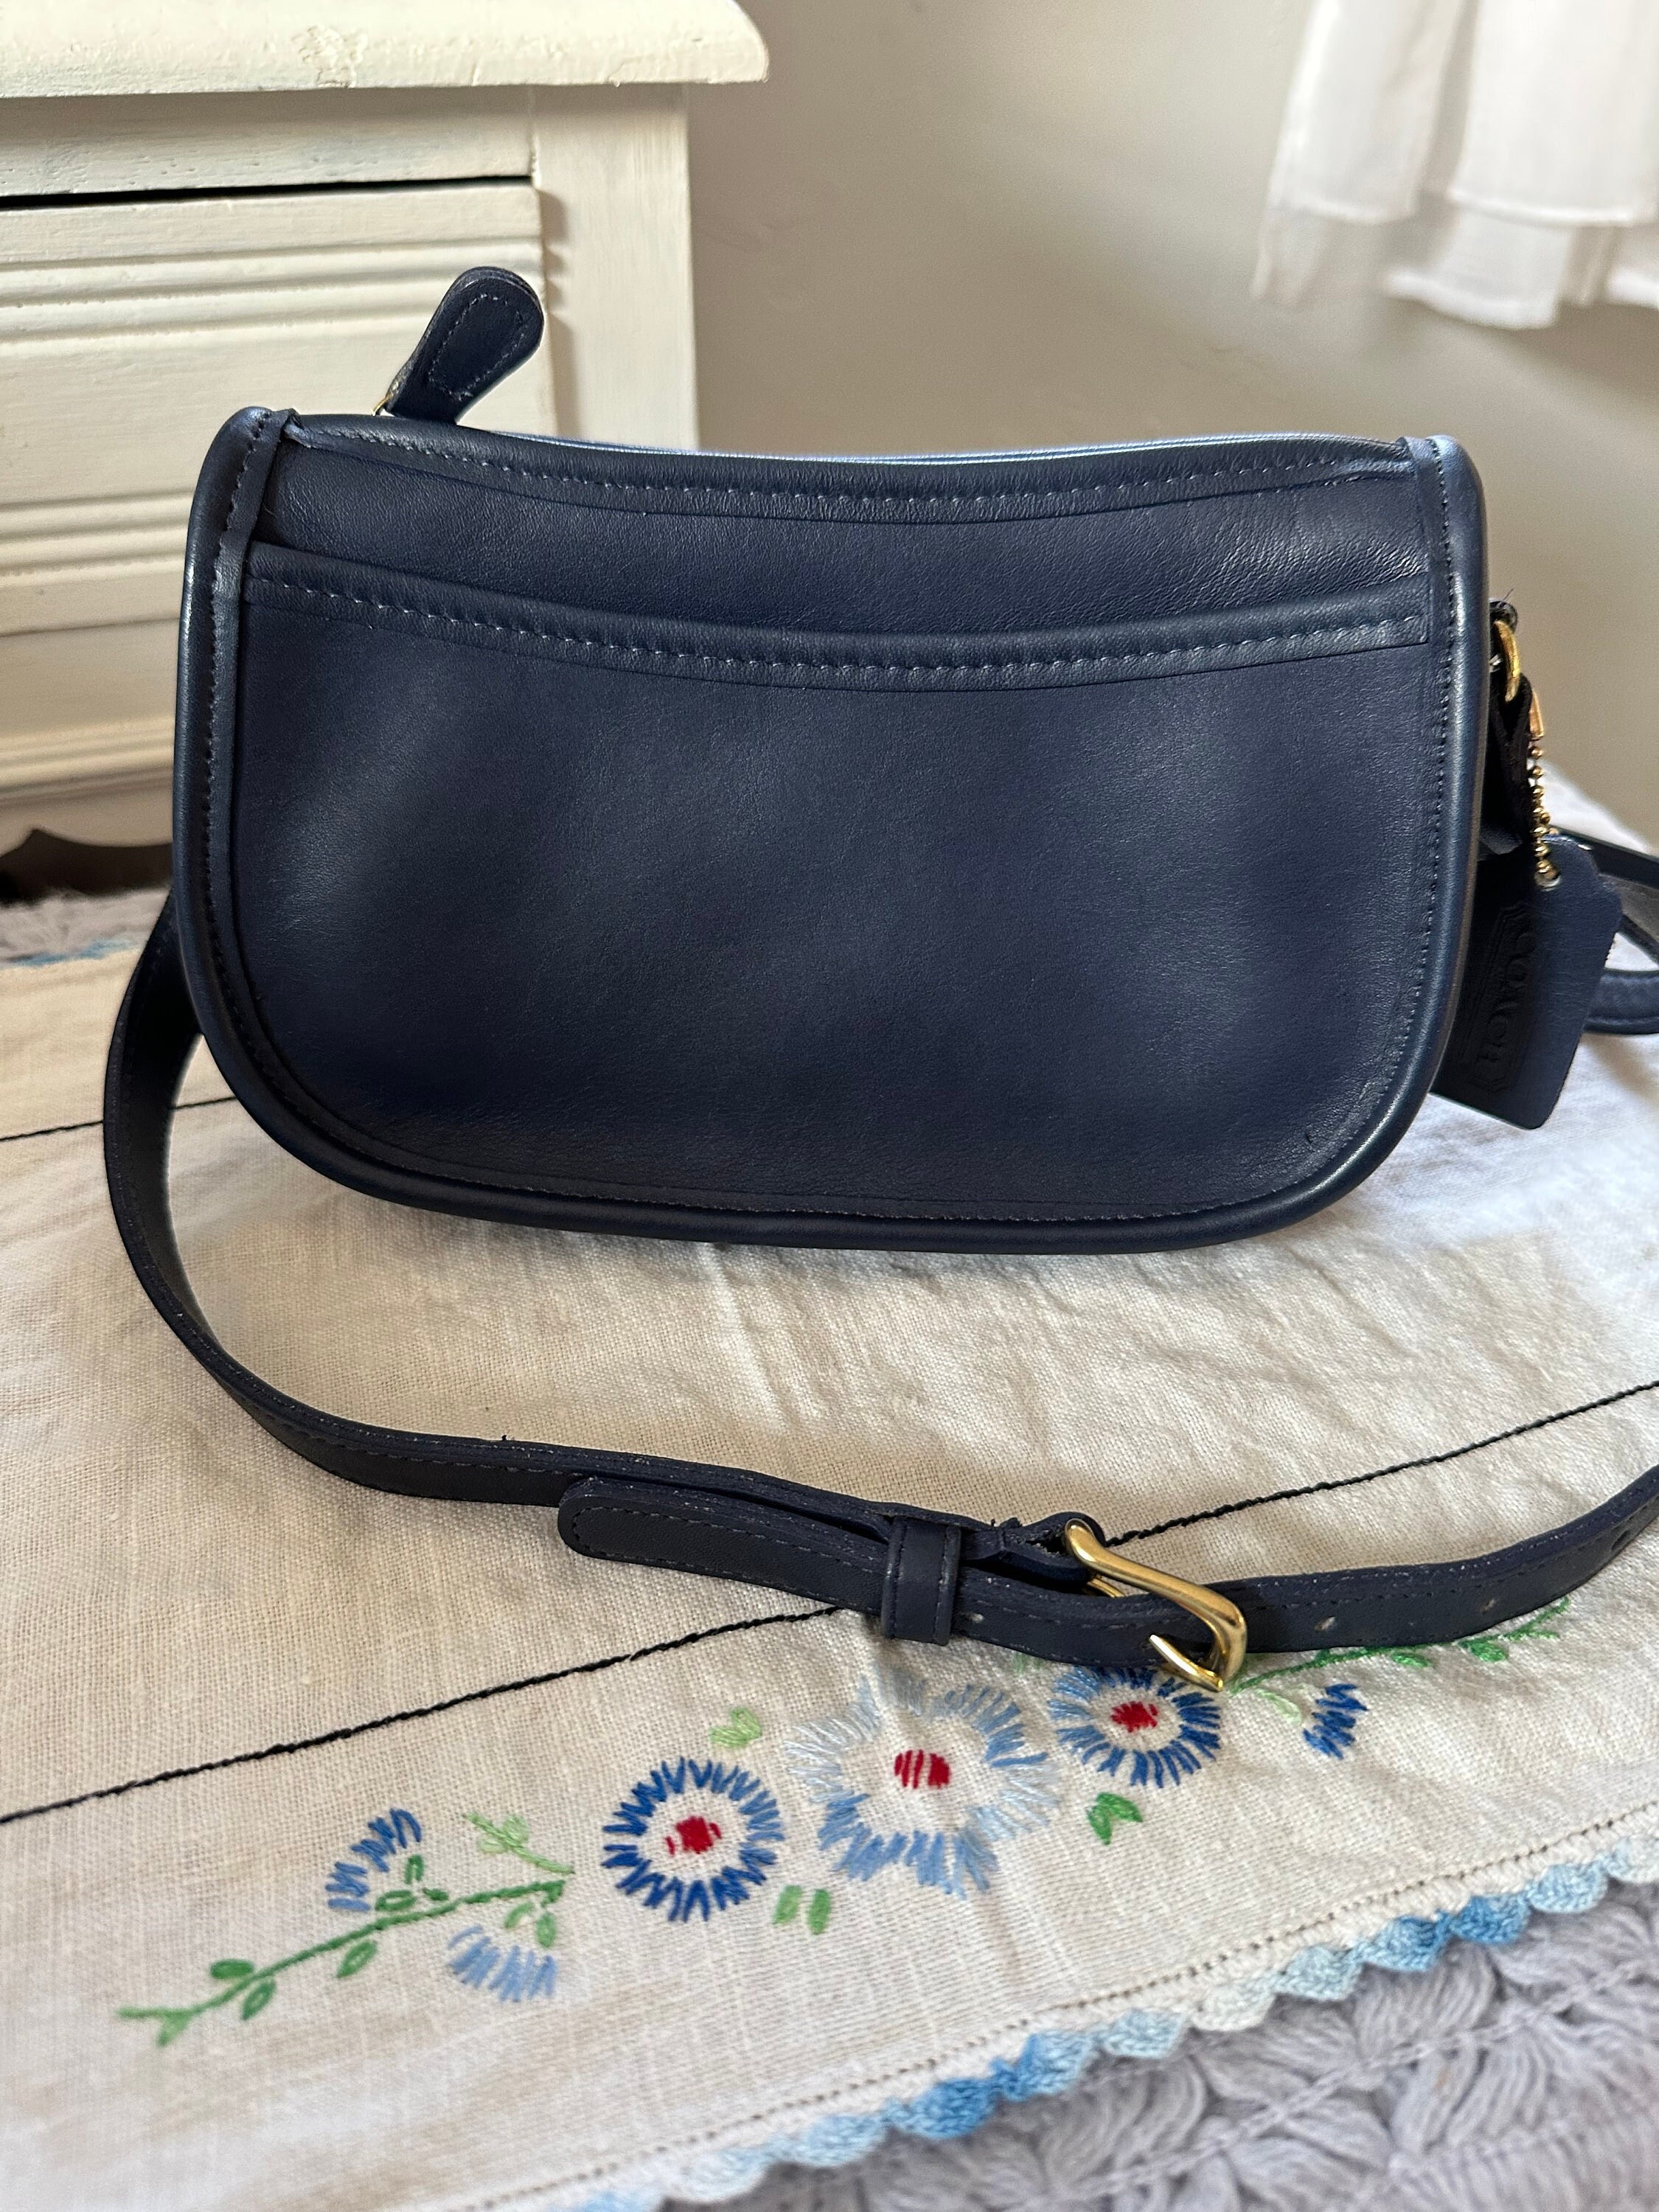 Vintage Coach Large Swinger Bag Leather Shoulder Bag Navy Blue 4040